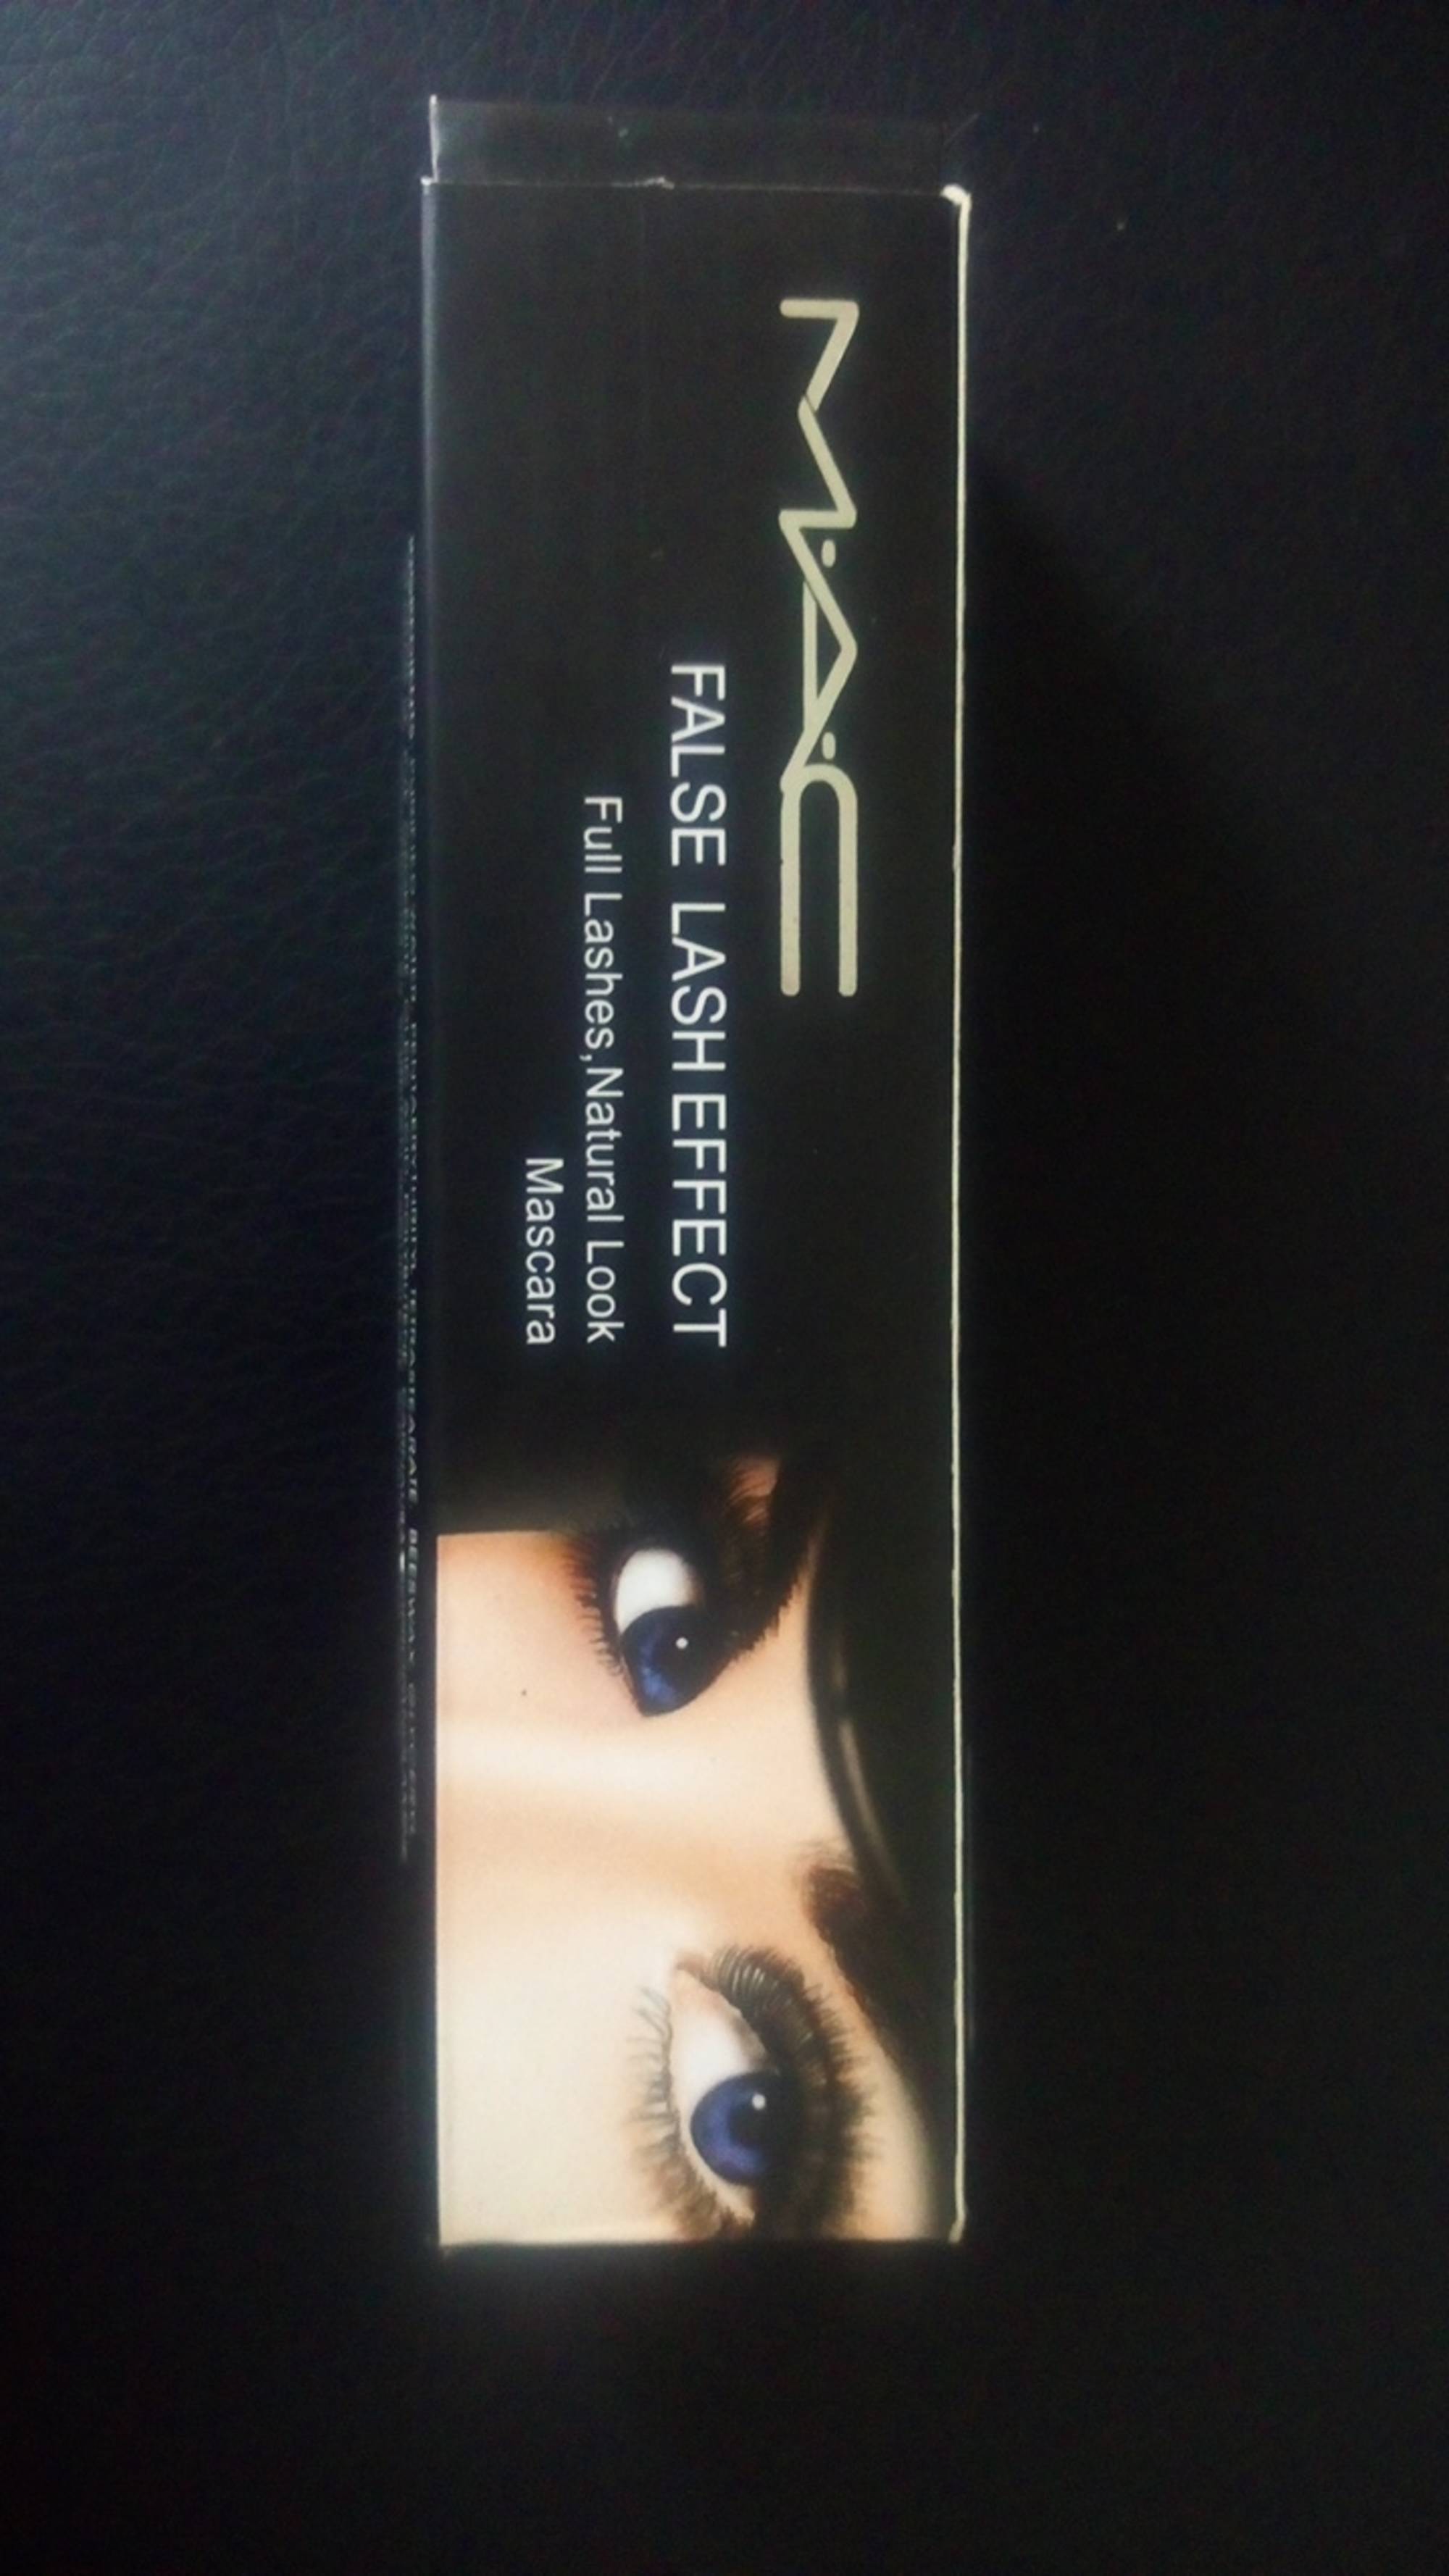 MAC - False lash effect - Mascara